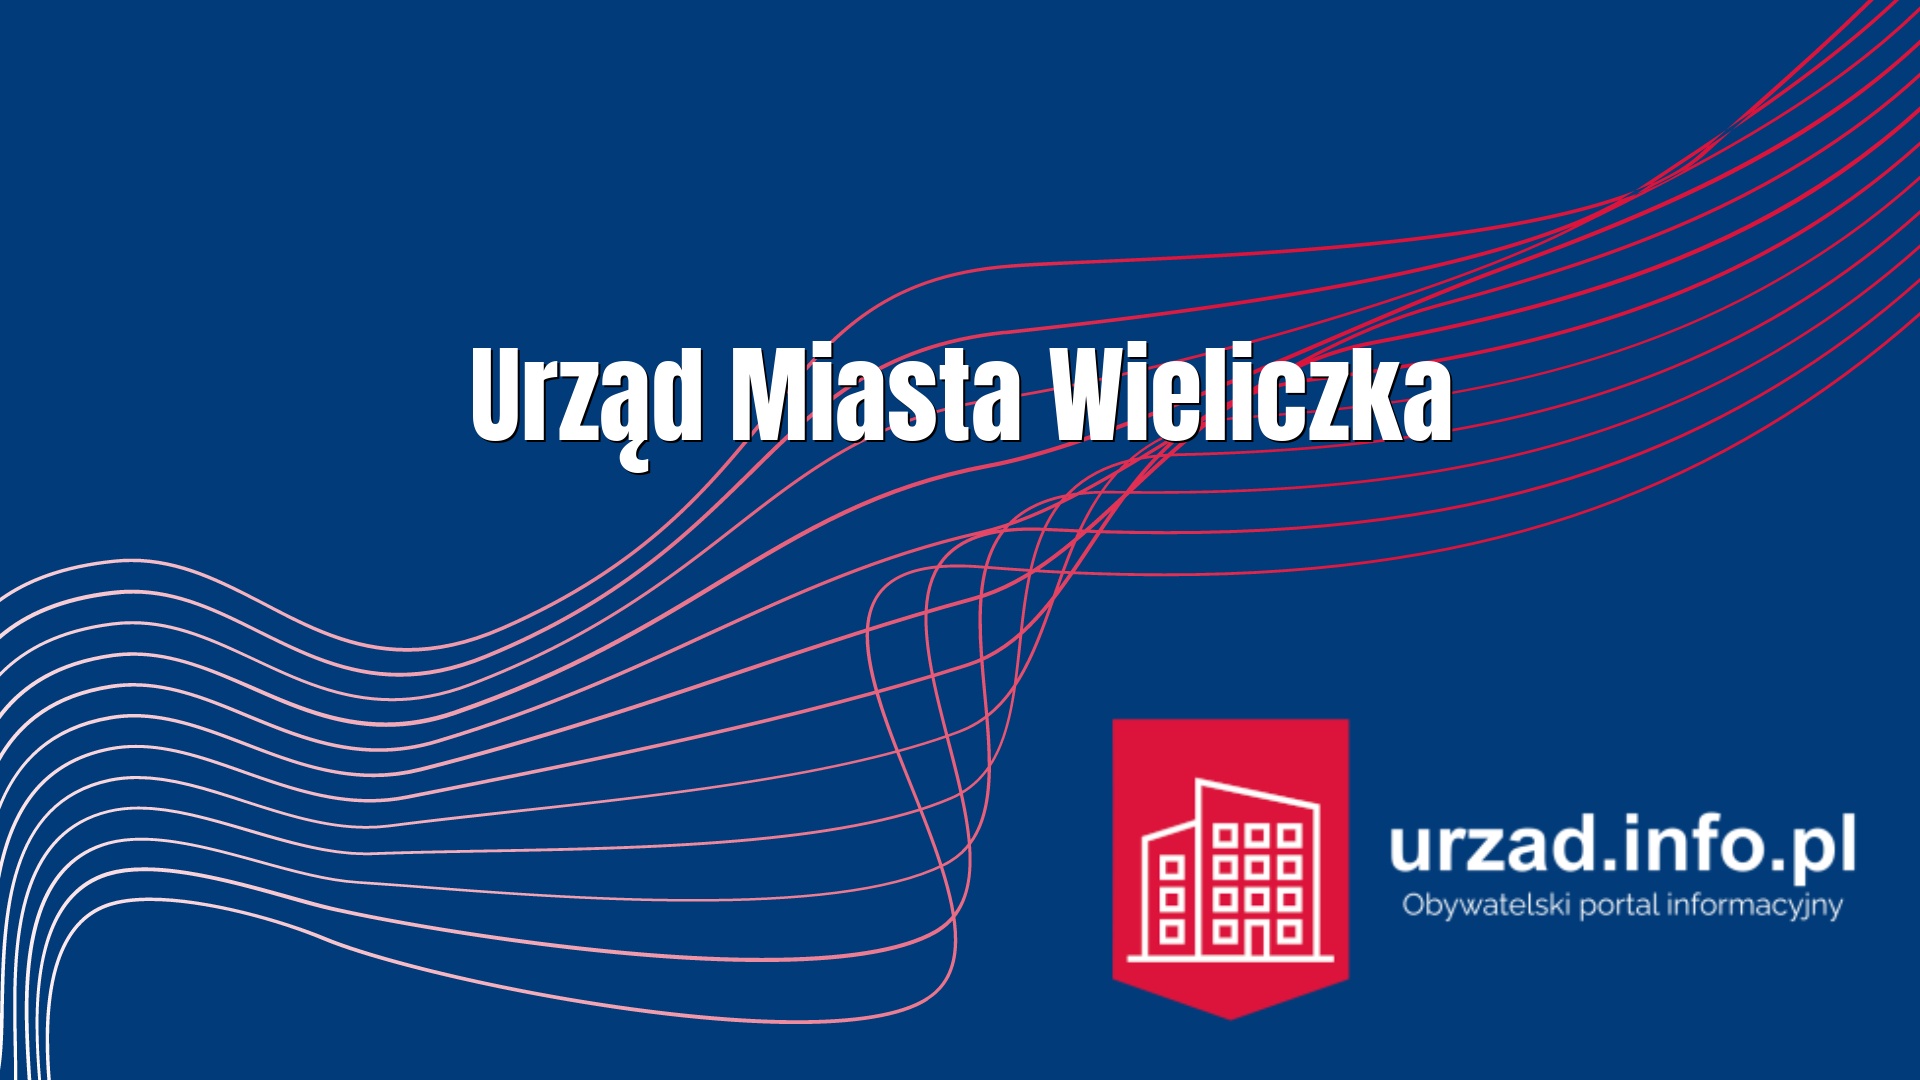 Urząd Miasta Wieliczka